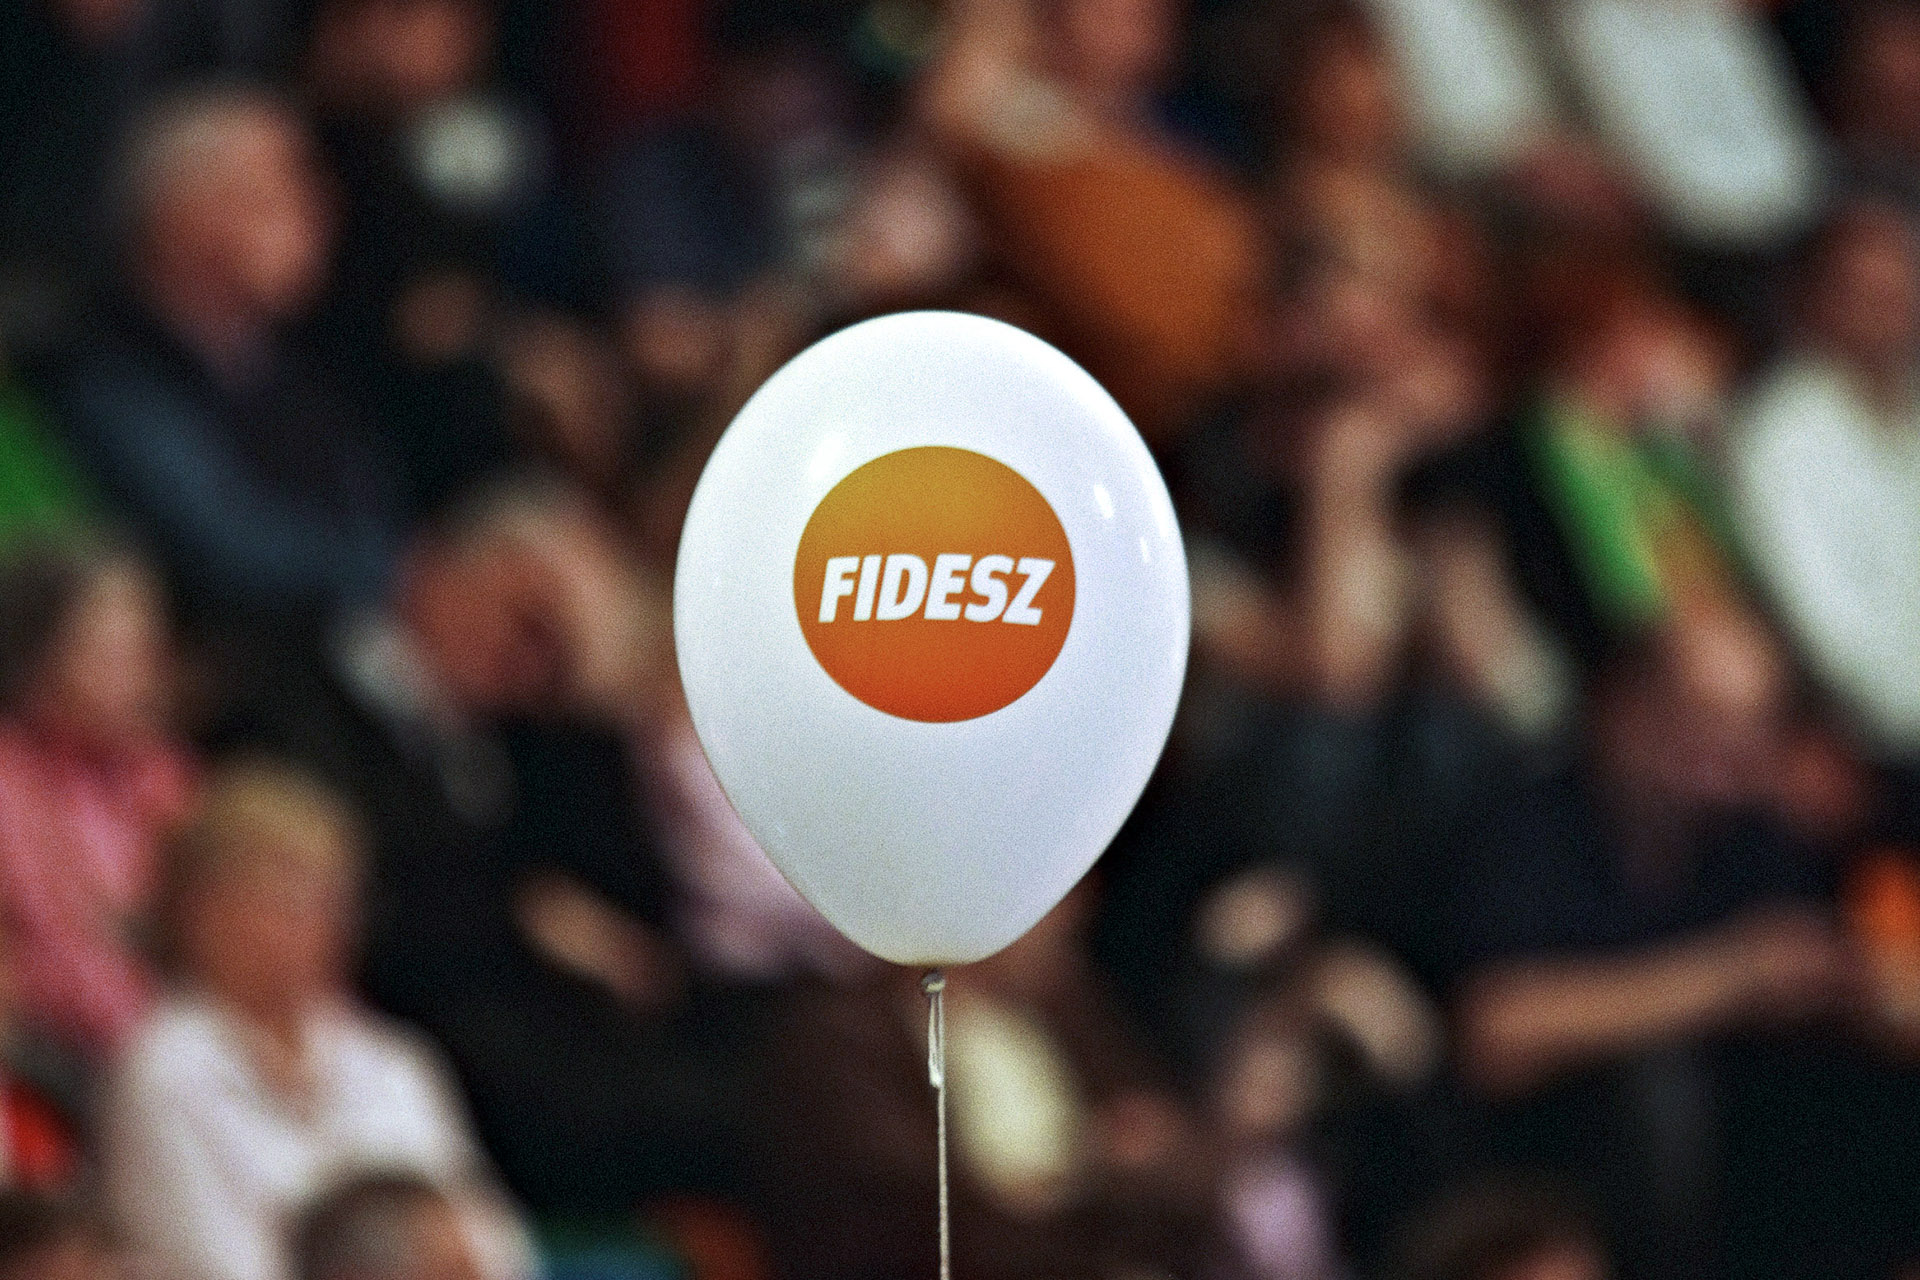 Ömlenek a támogatások a Fideszes városokba, de az Európai Bizottság nem tesz semmit 